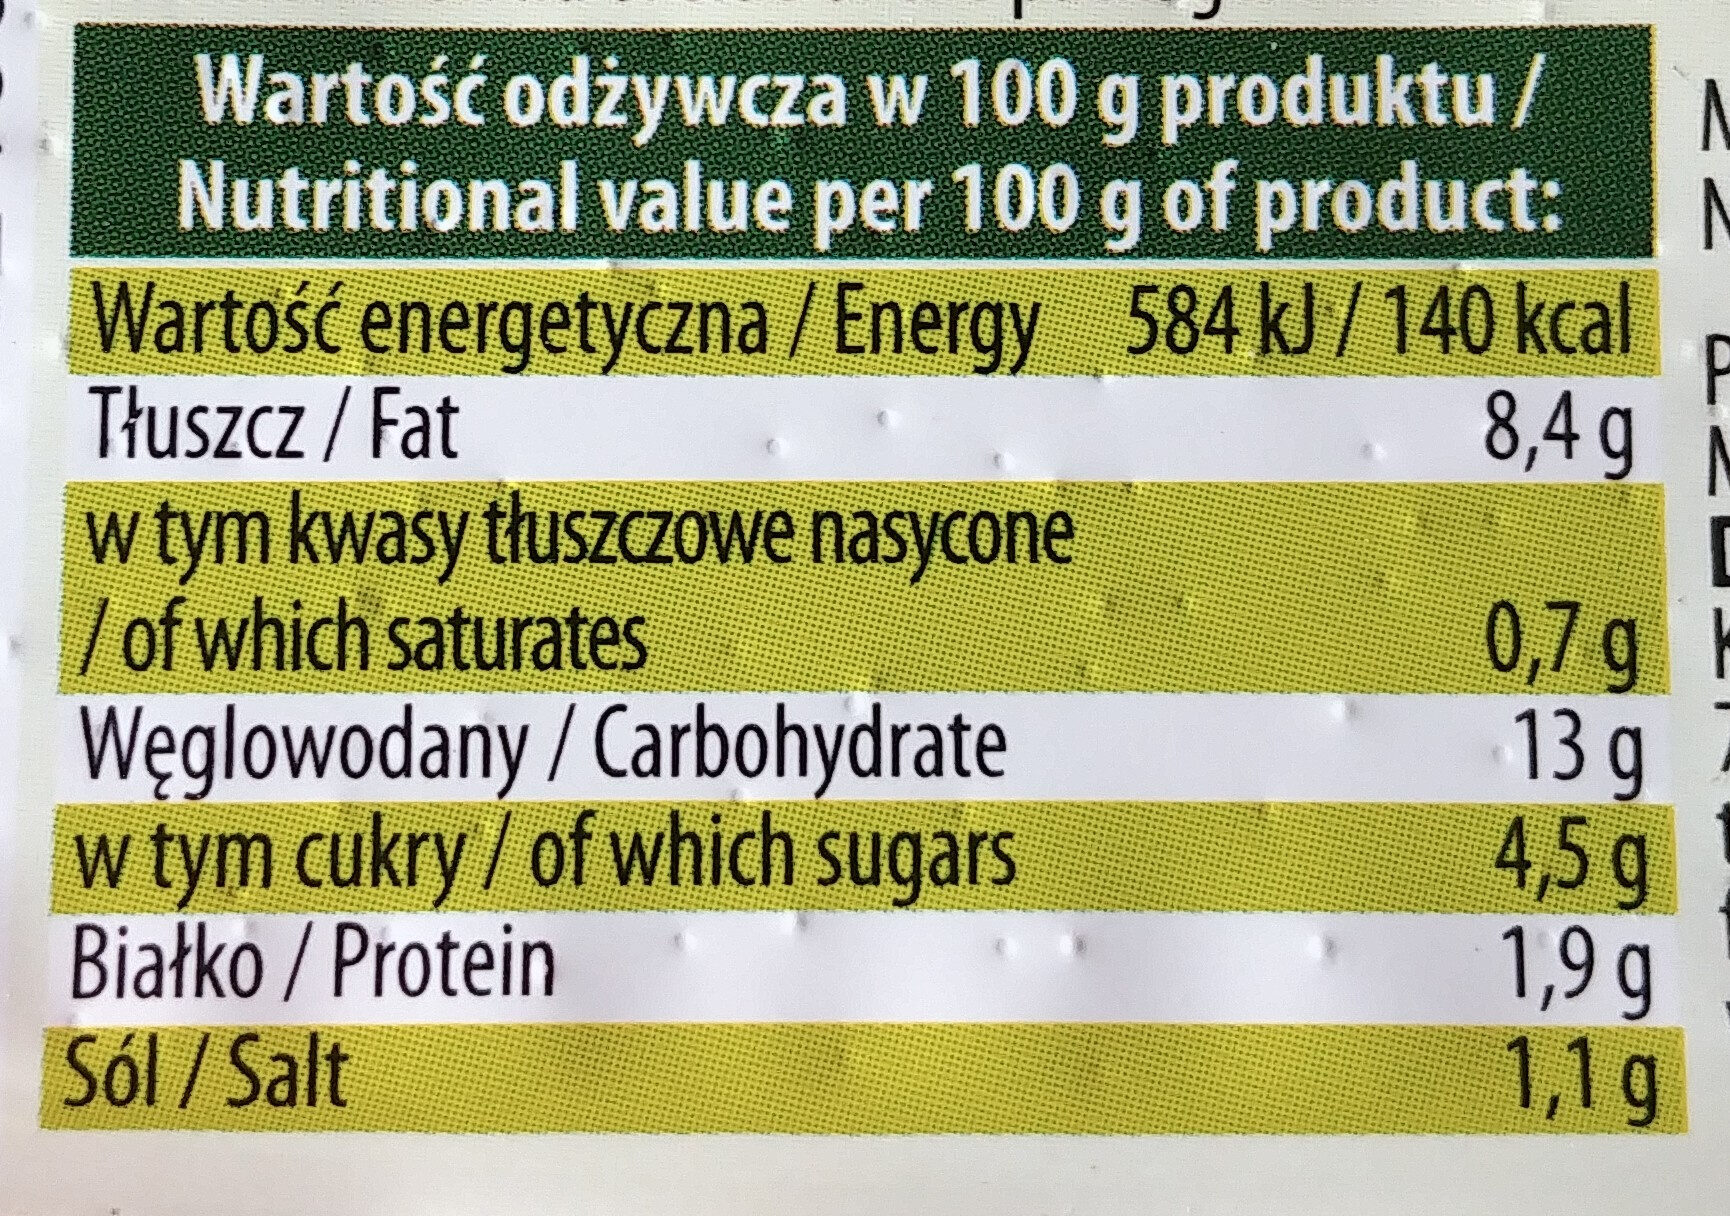 Sałatka jarzynowa a' la domowa - Nutrition facts - pl